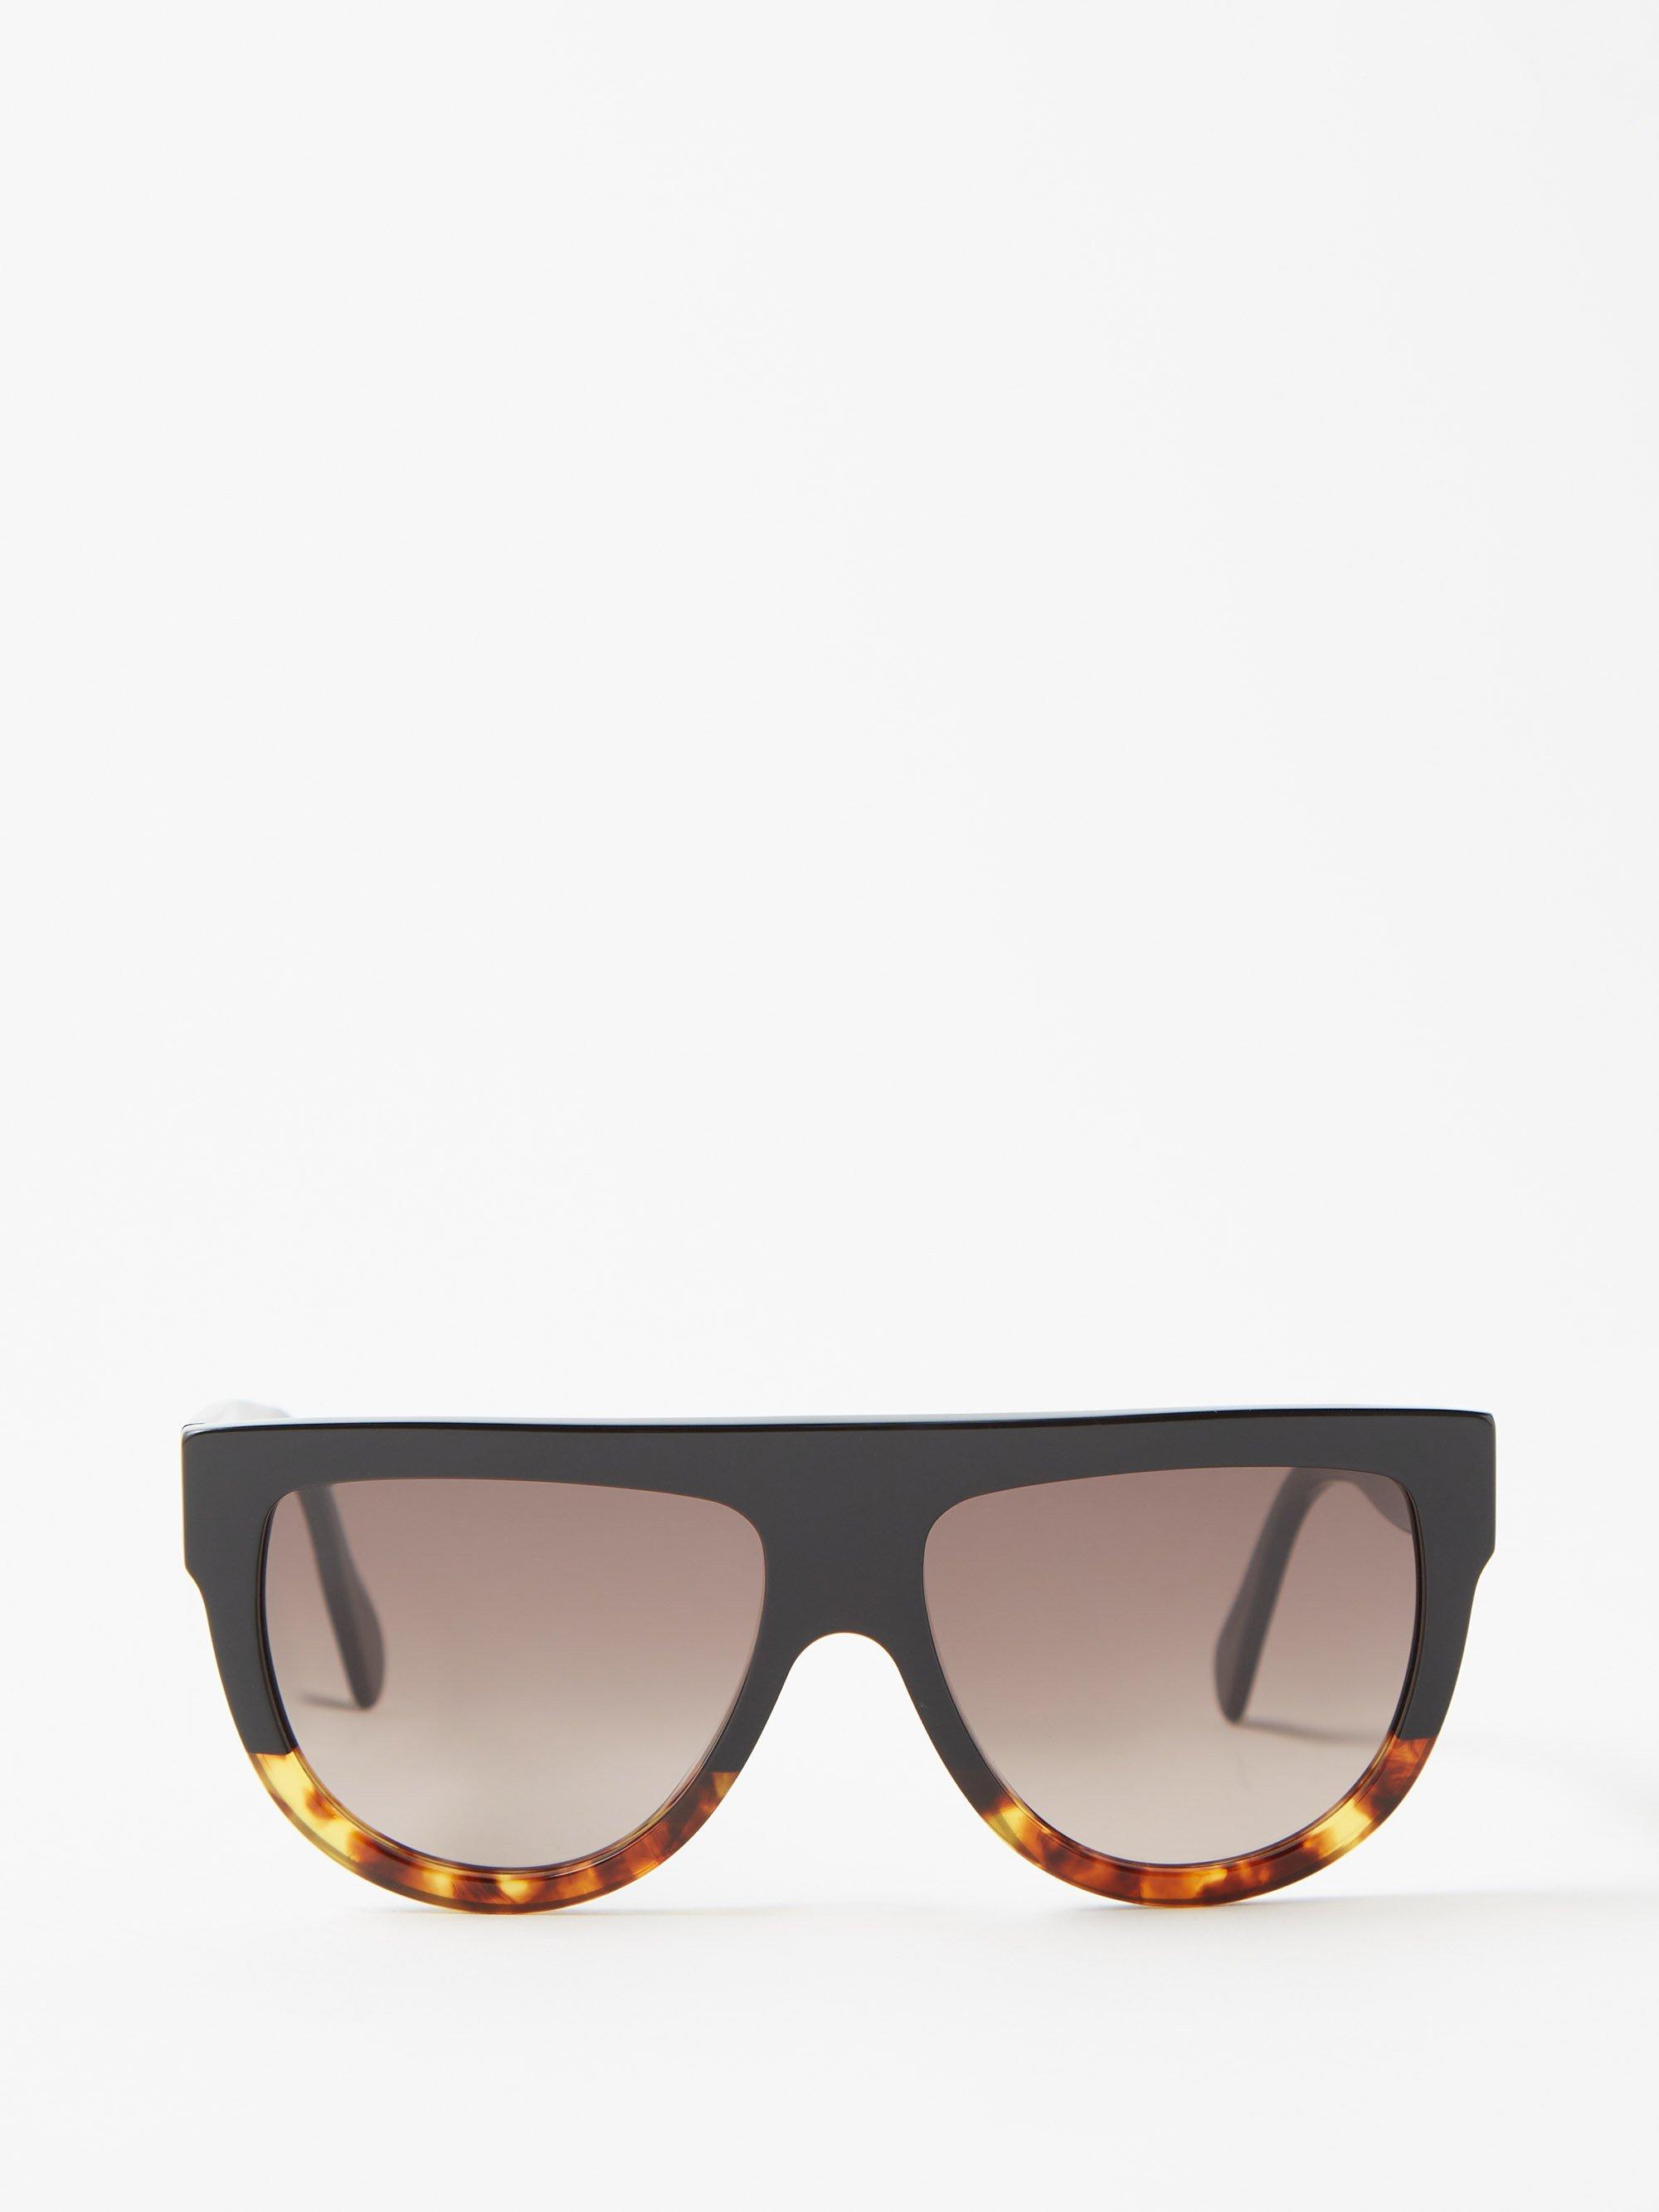 Celine D-frame Acetate Sunglasses in Gray | Lyst